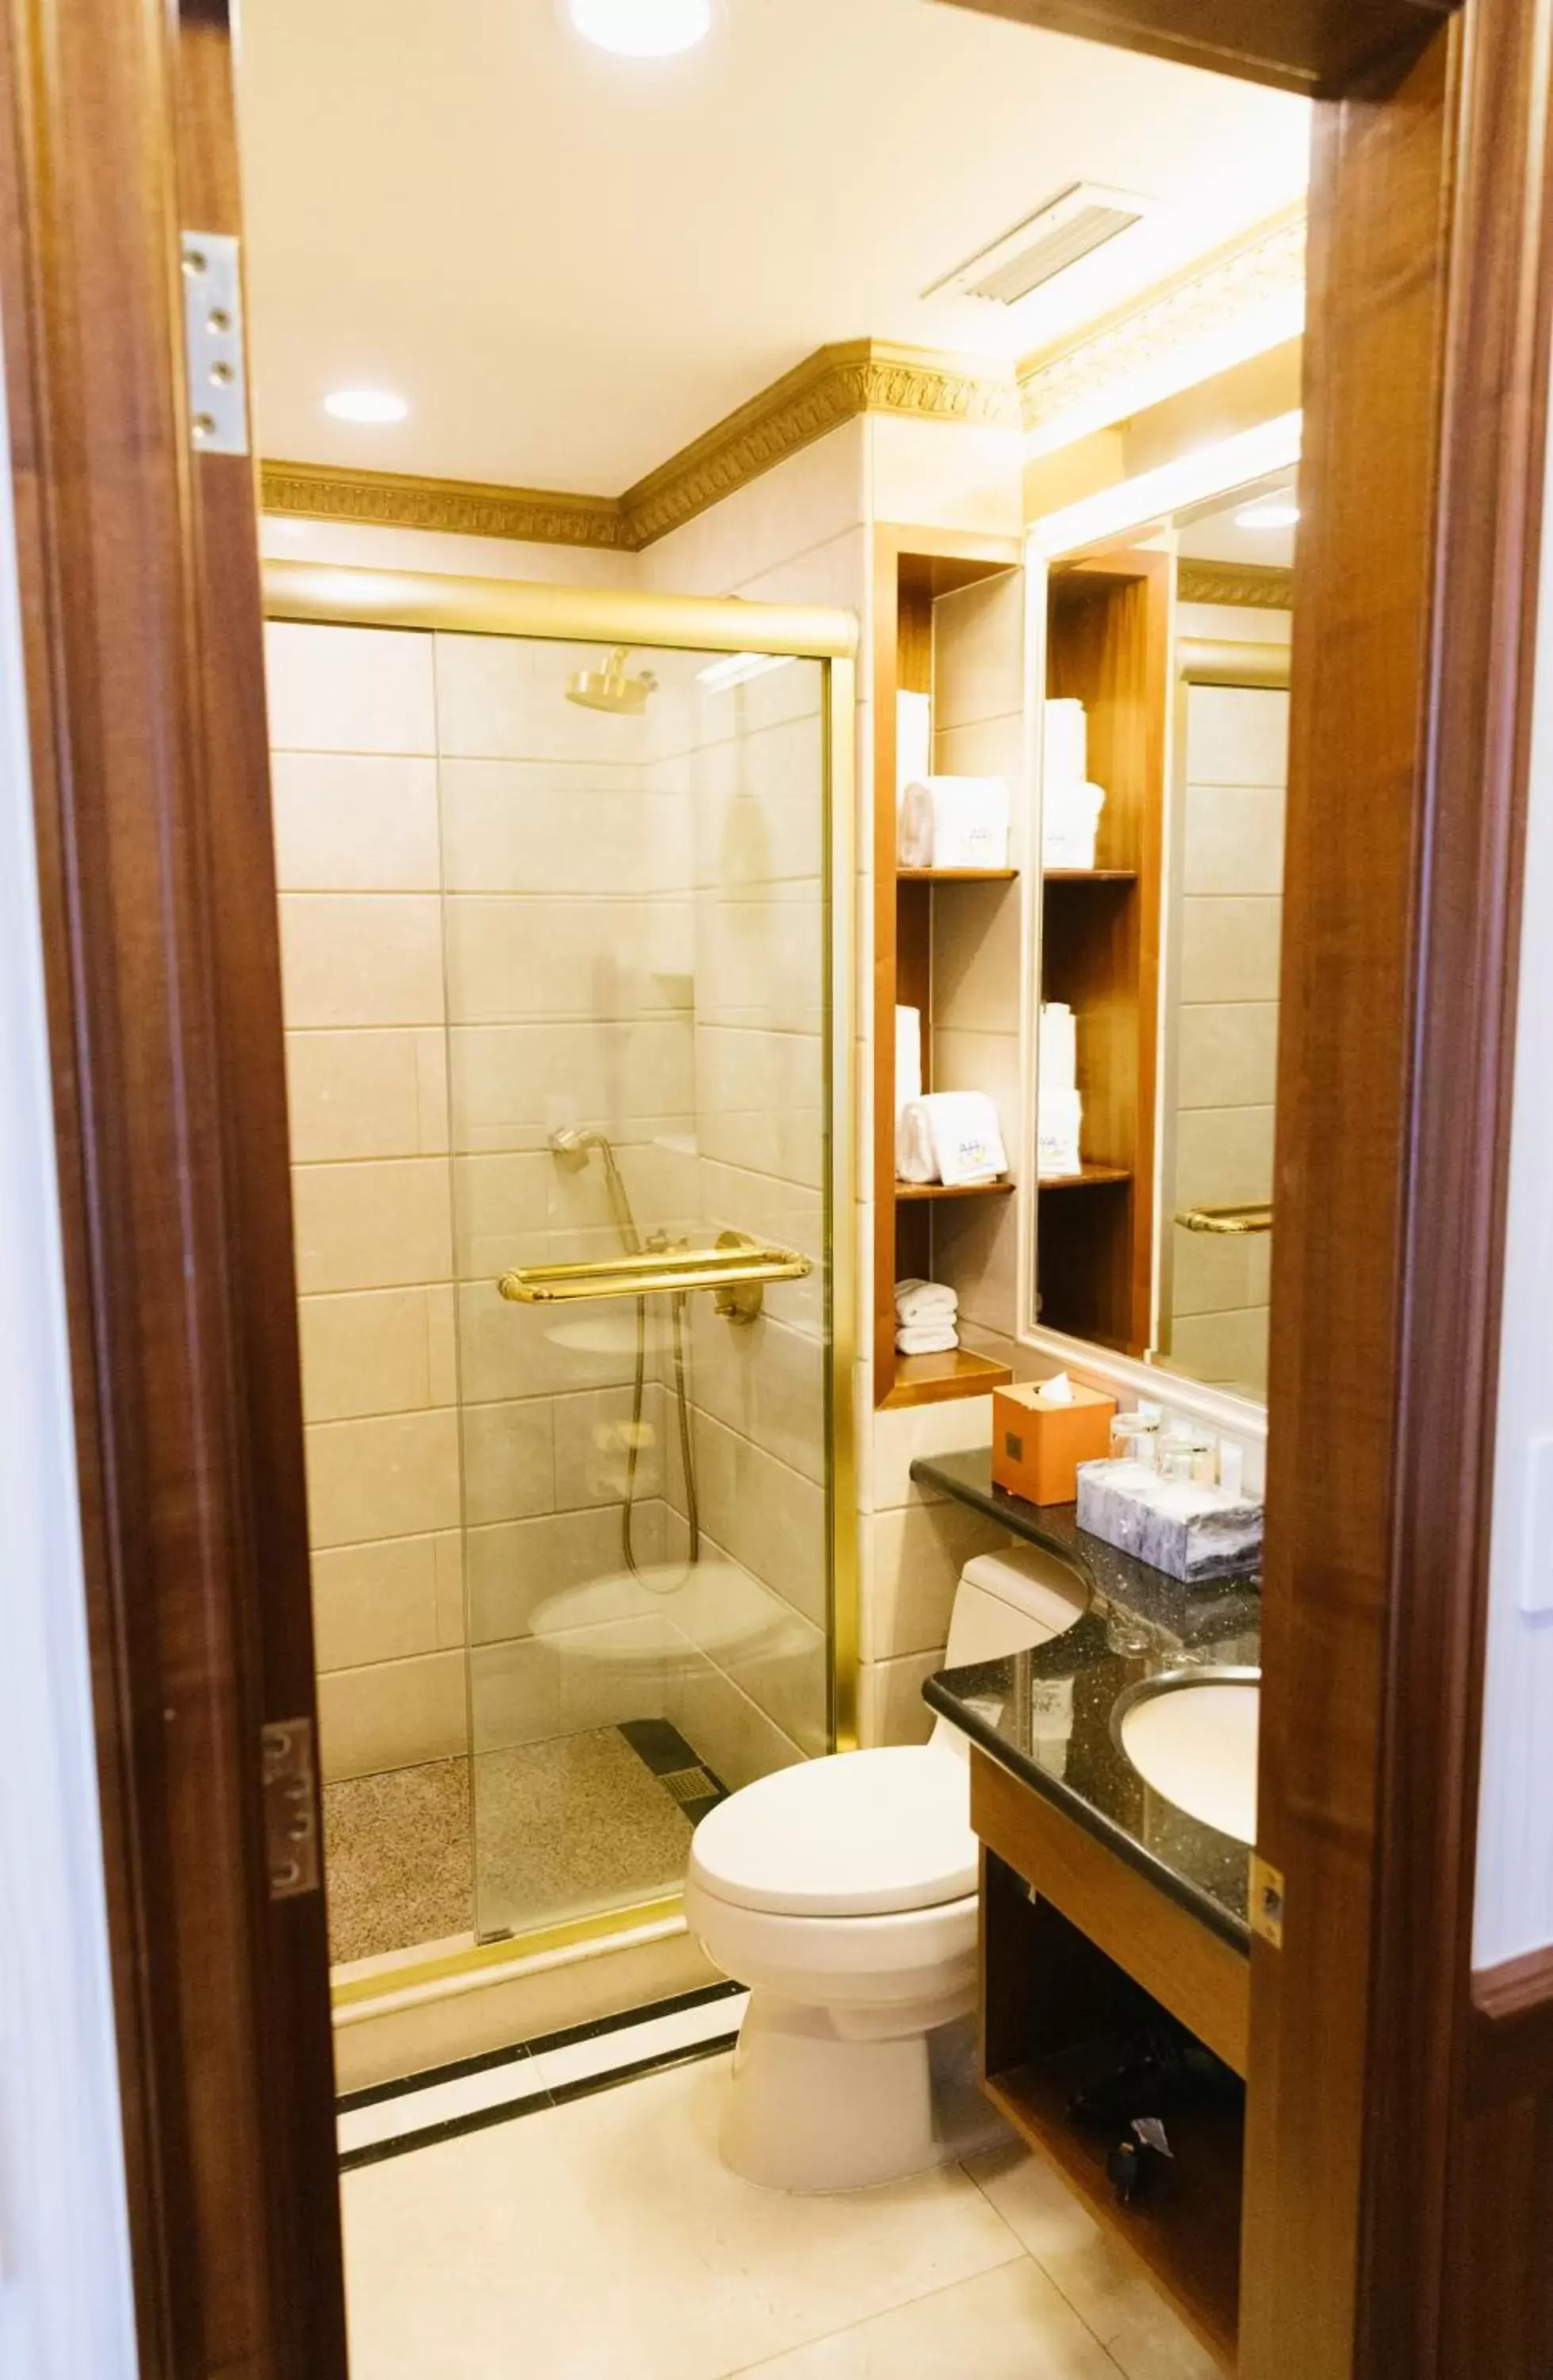 Bathroom in The Allen Hotel